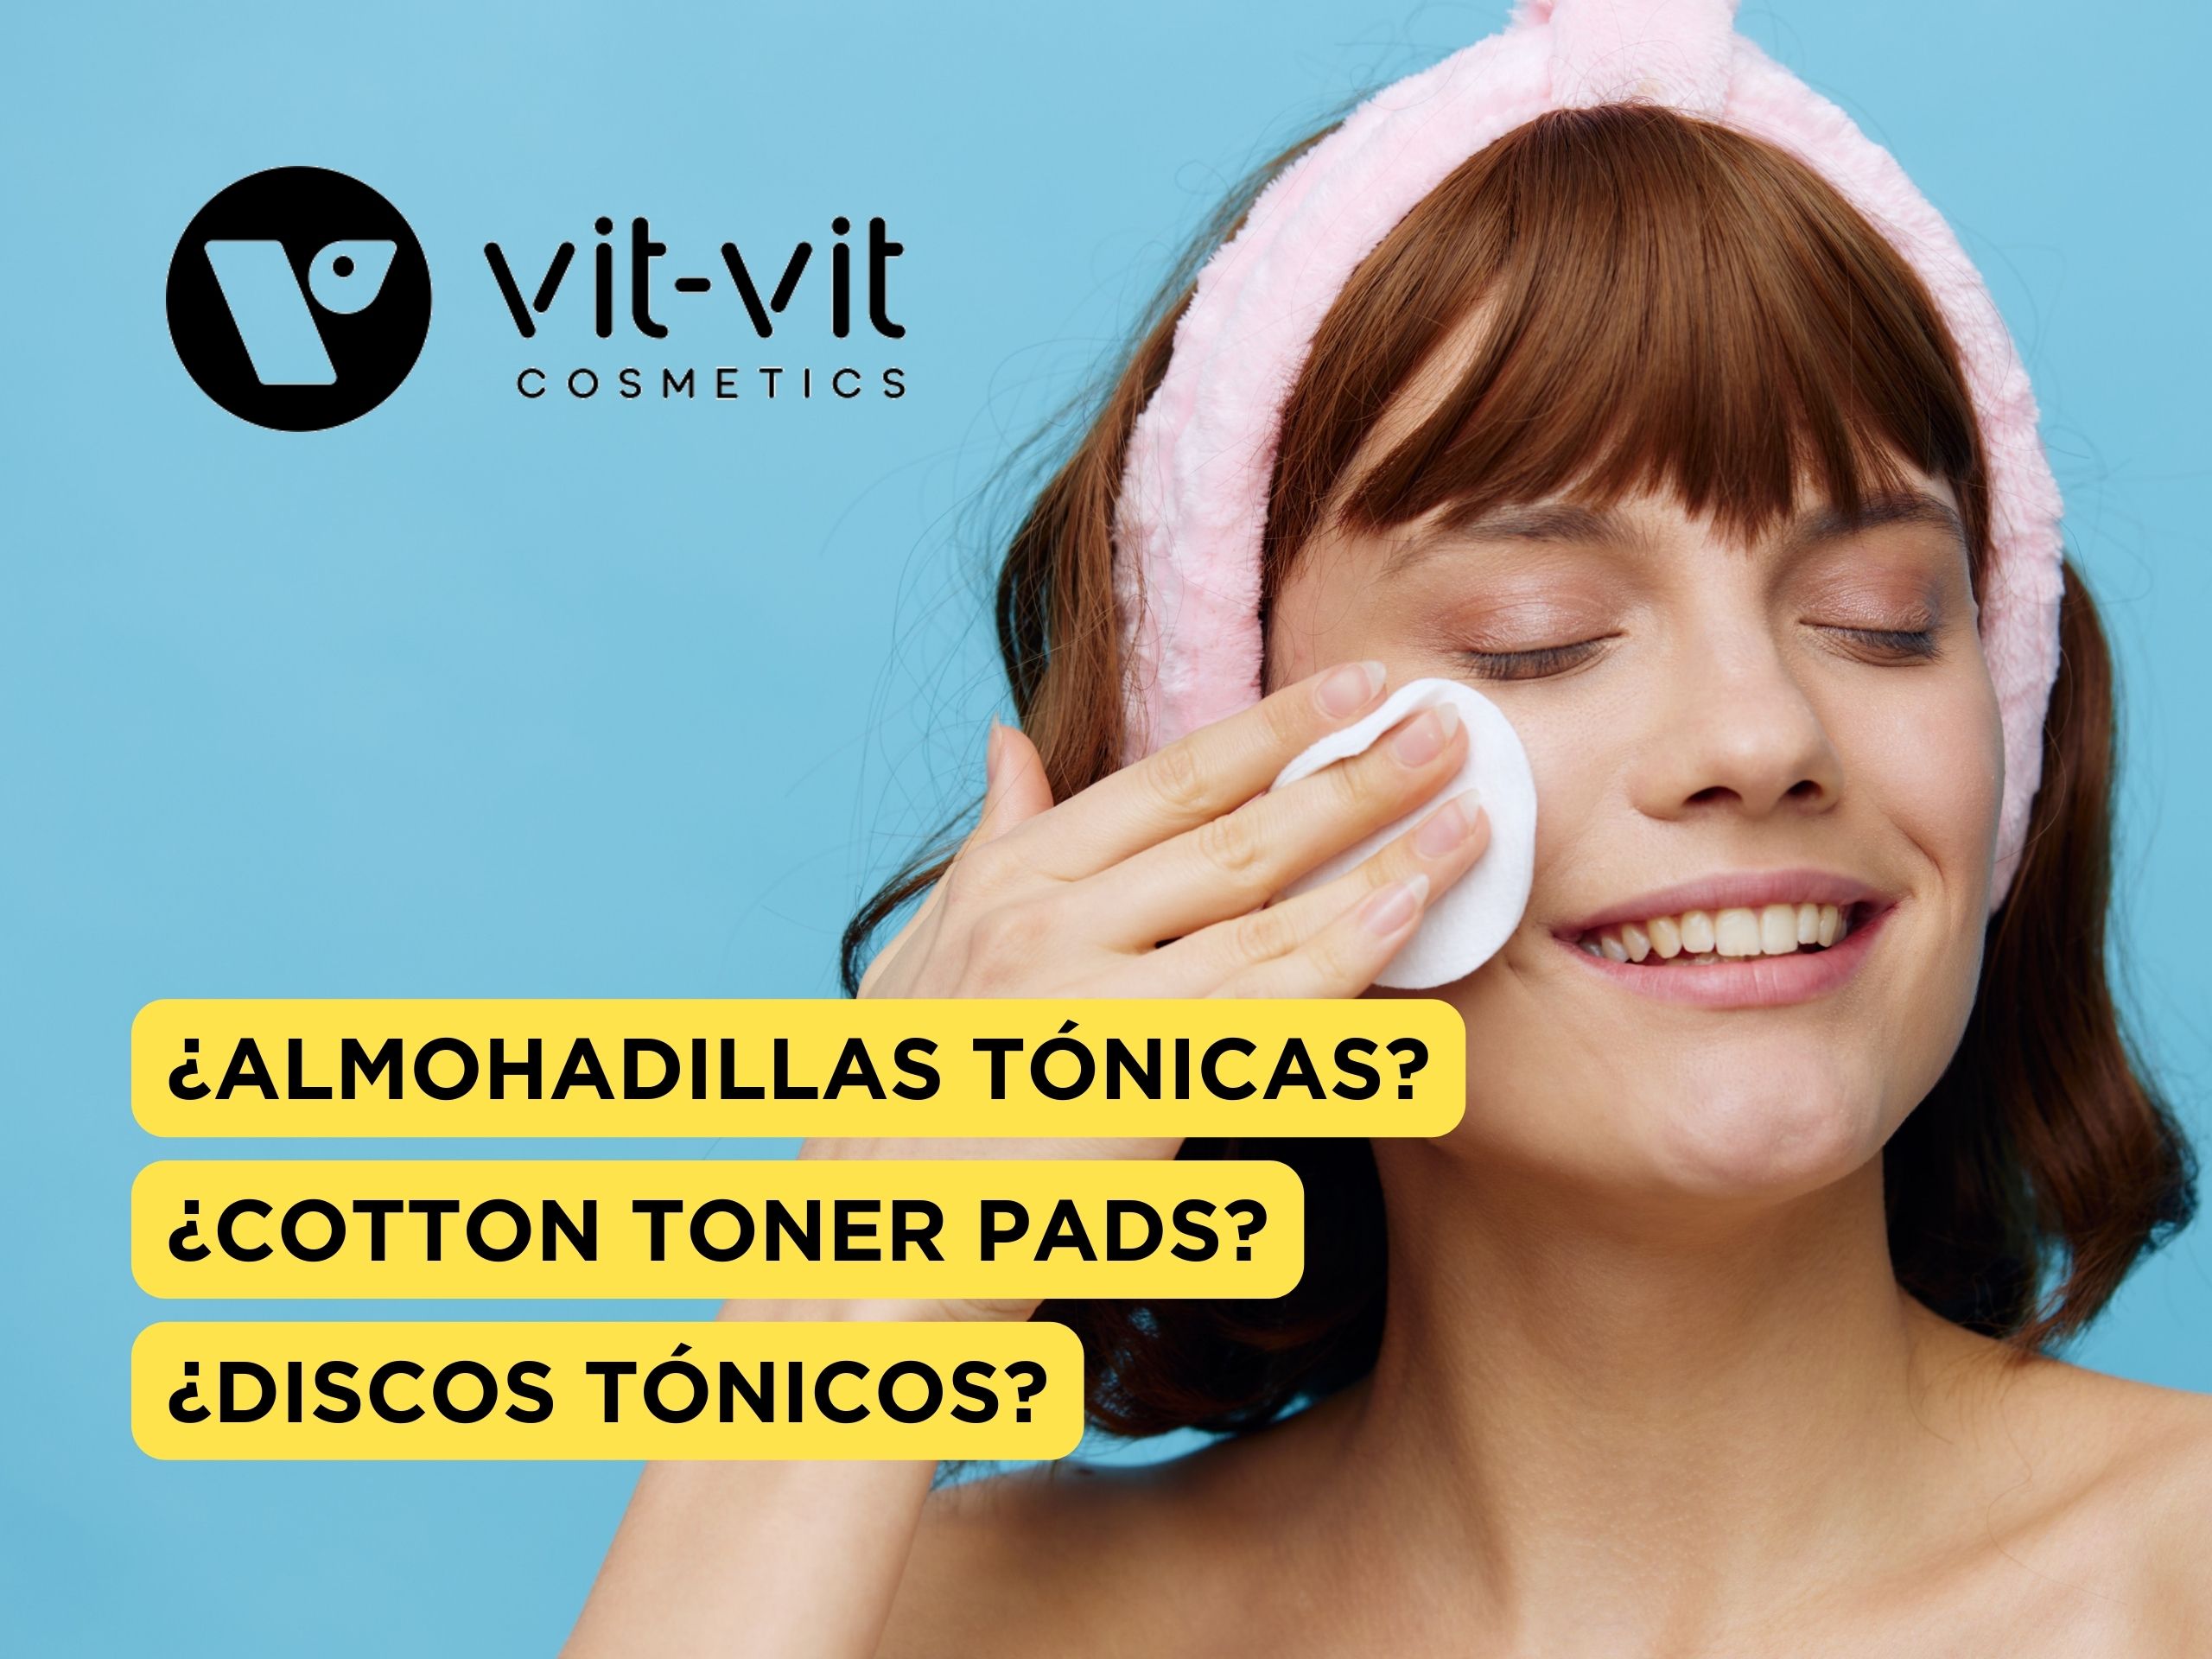 Almohadillas Tónicas, Cotton Toner Pads, Discos Tónicos para maximar los beneficios de tu rutina facial